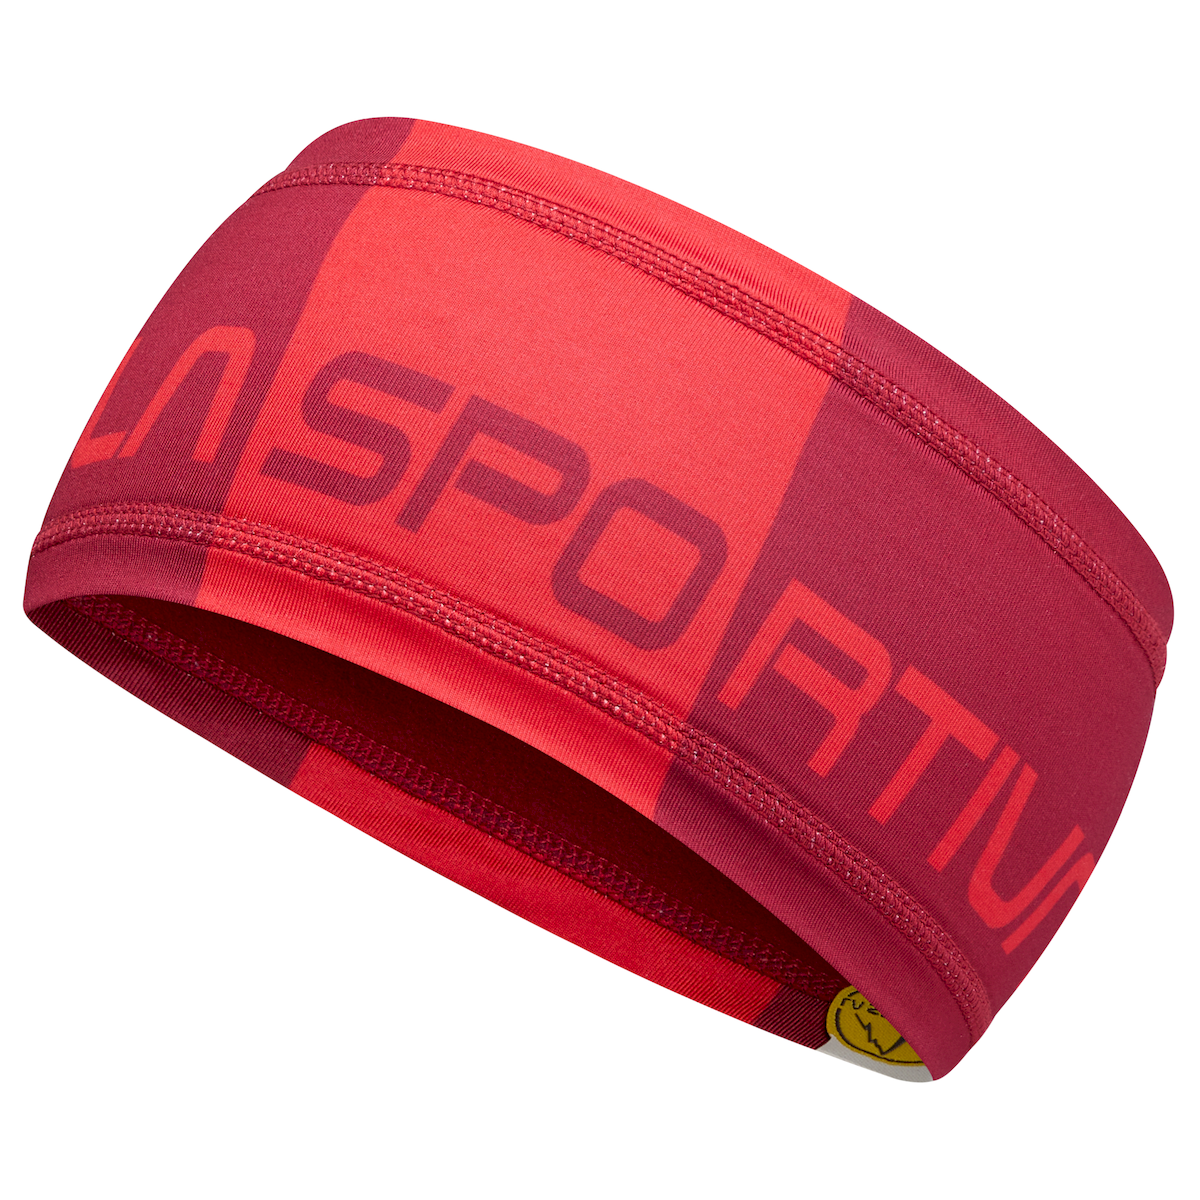 La Sportiva Diagonal Headband - Headband